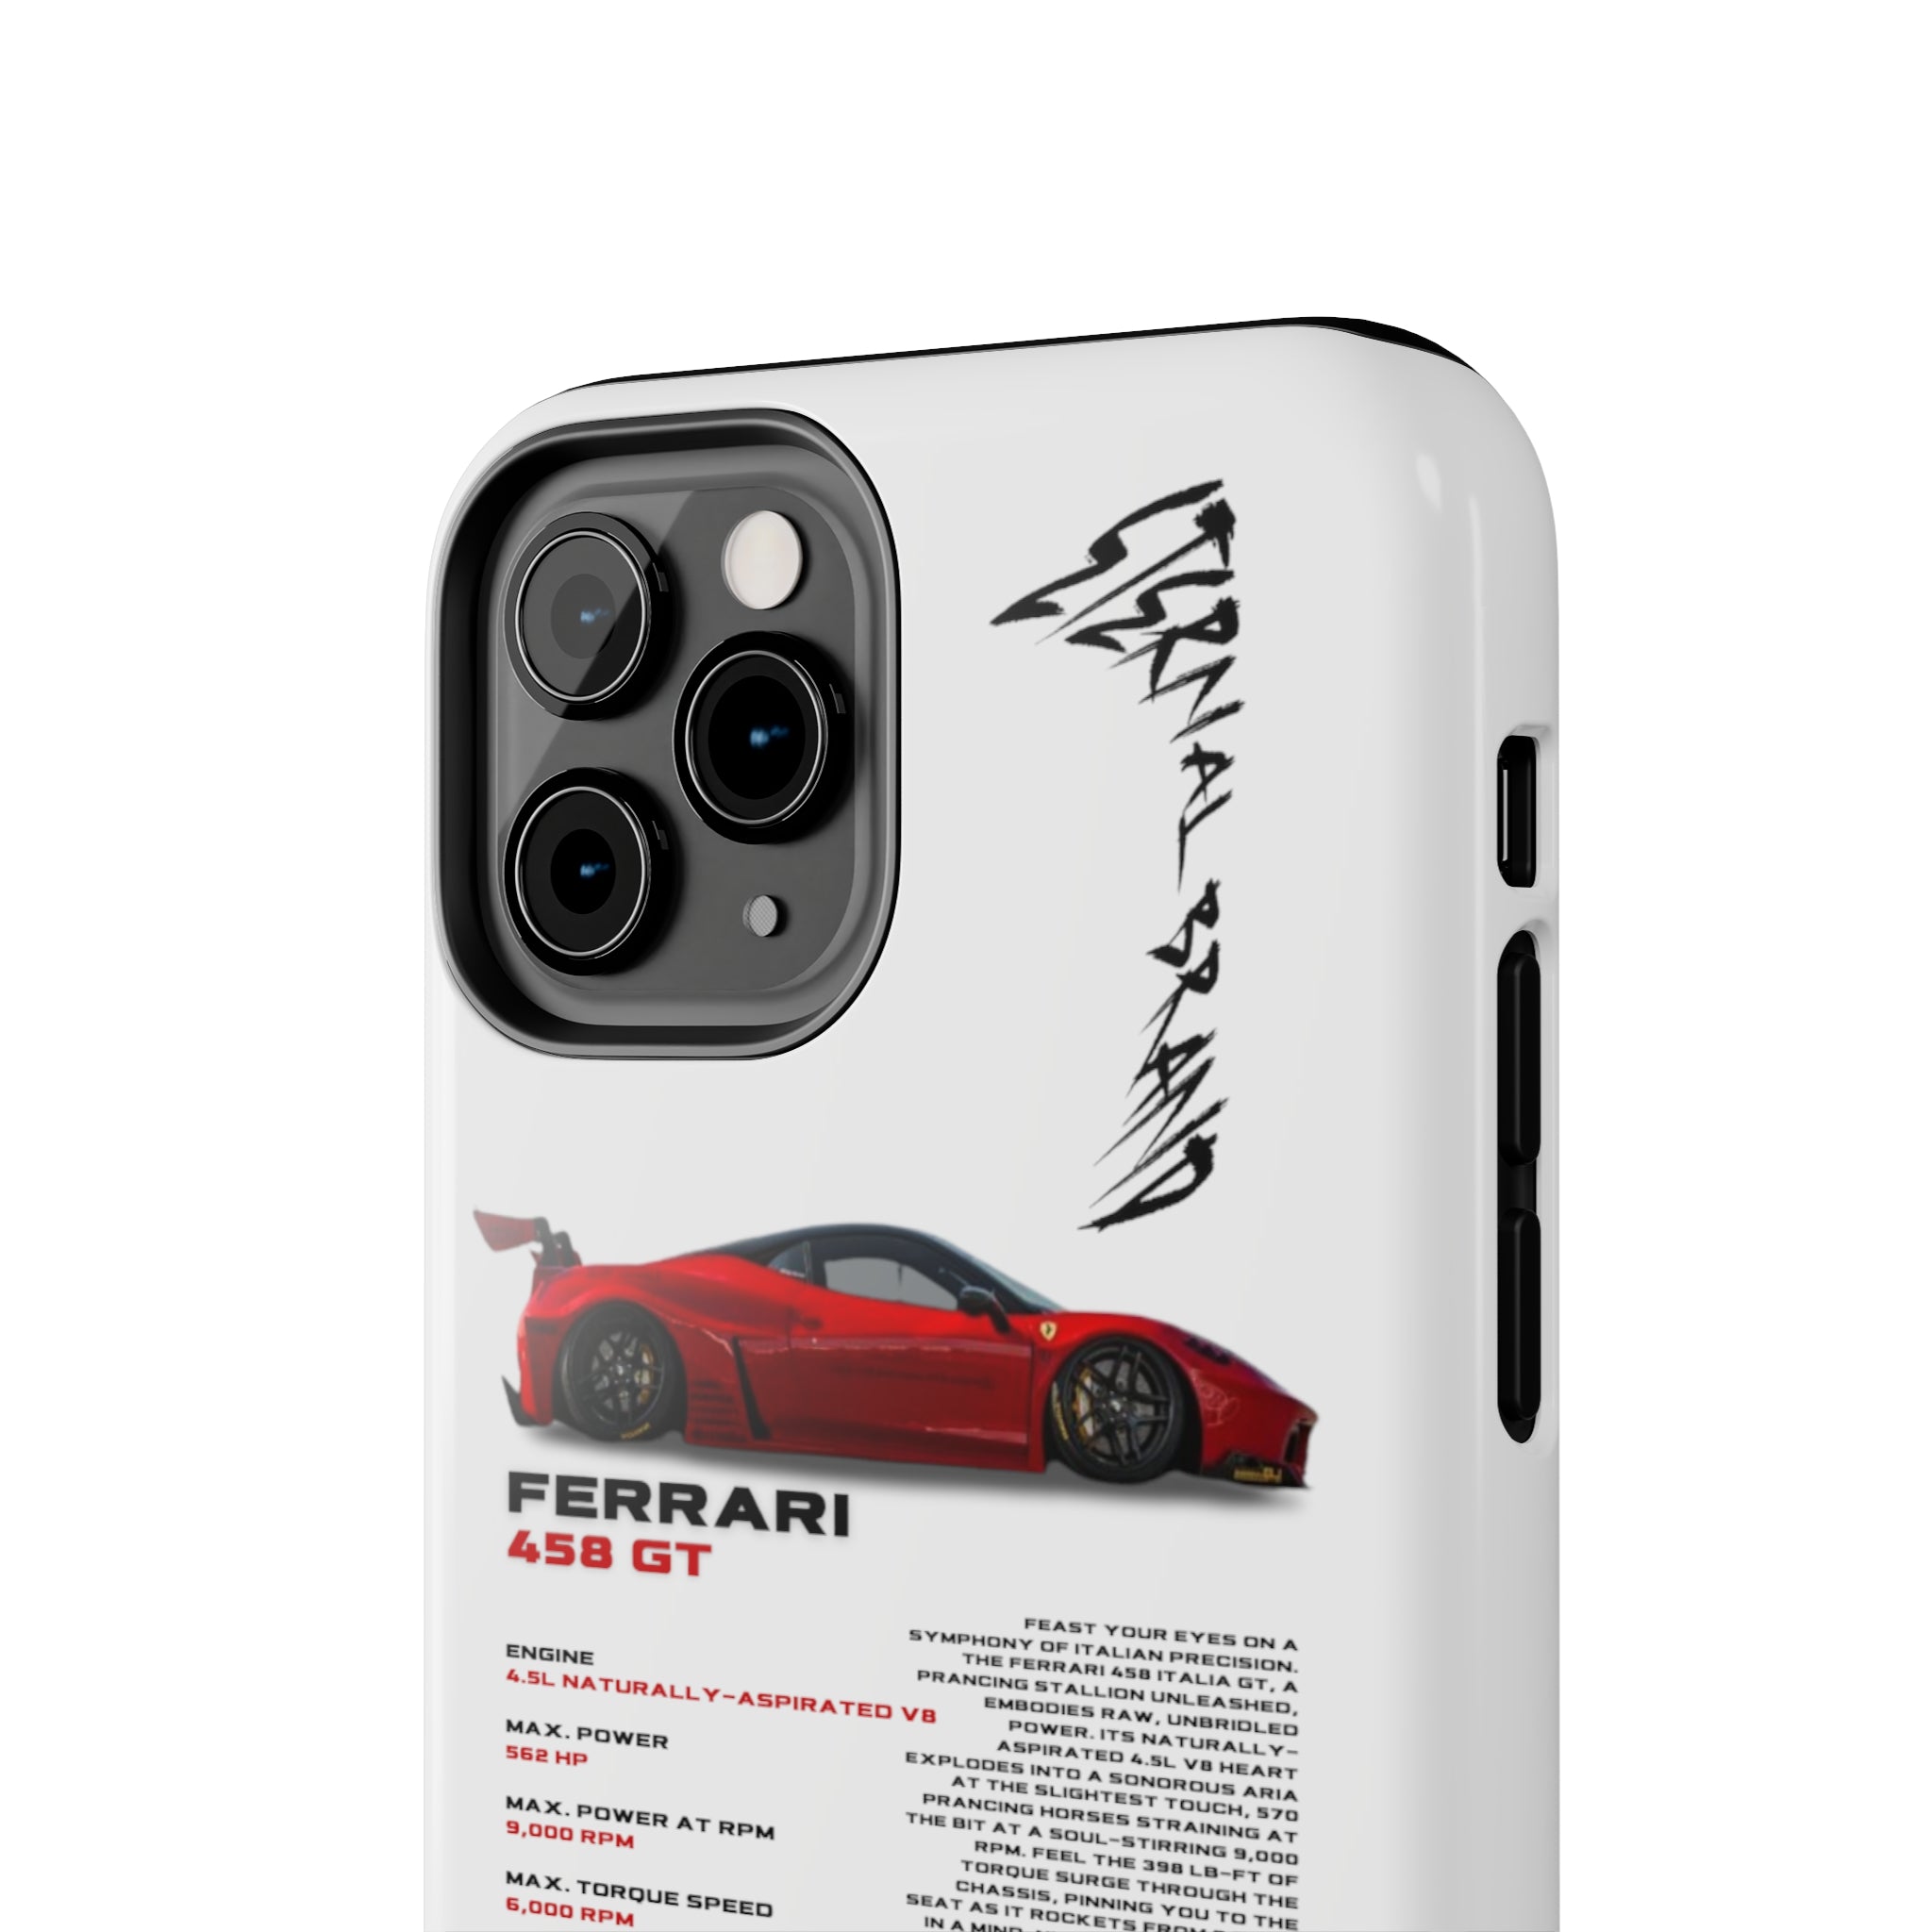 Ferrari 458 GT "Red"